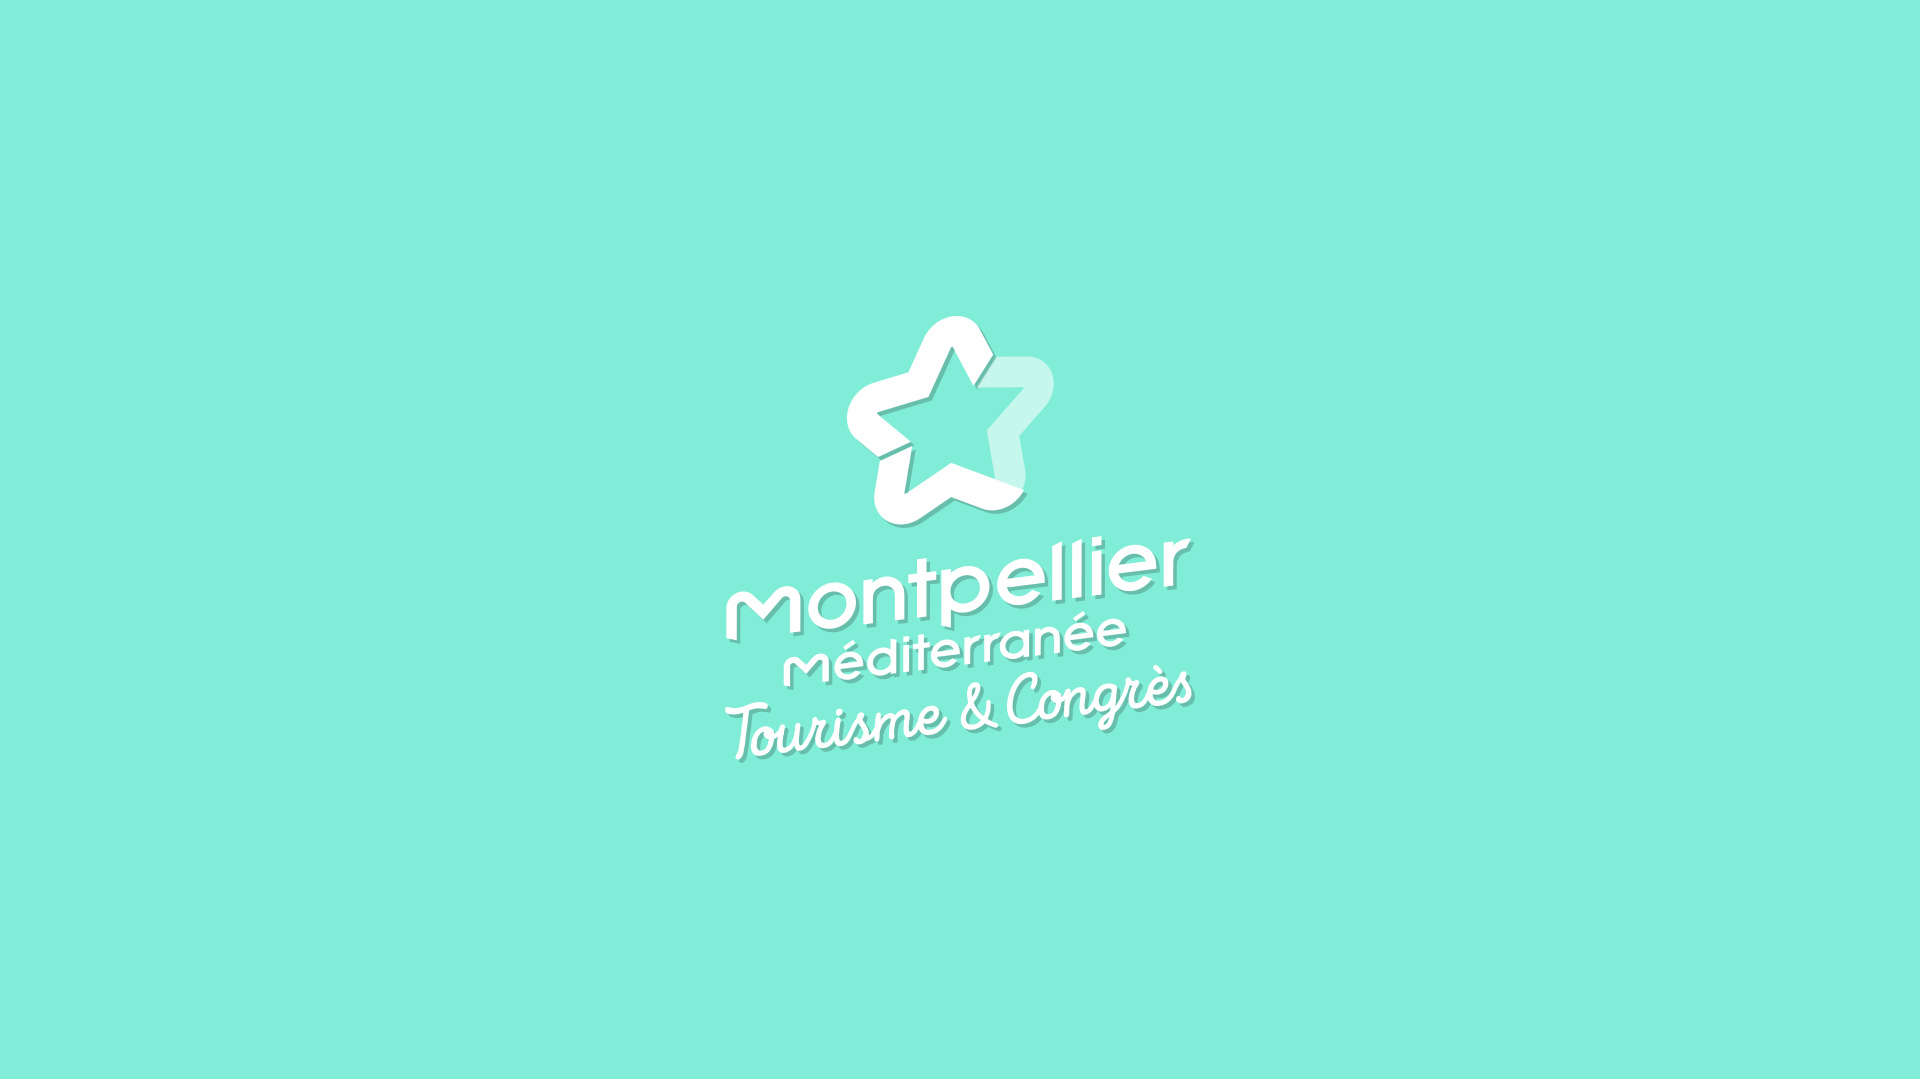 Montpellier Histoire De La Marque Et Origine Du Logo